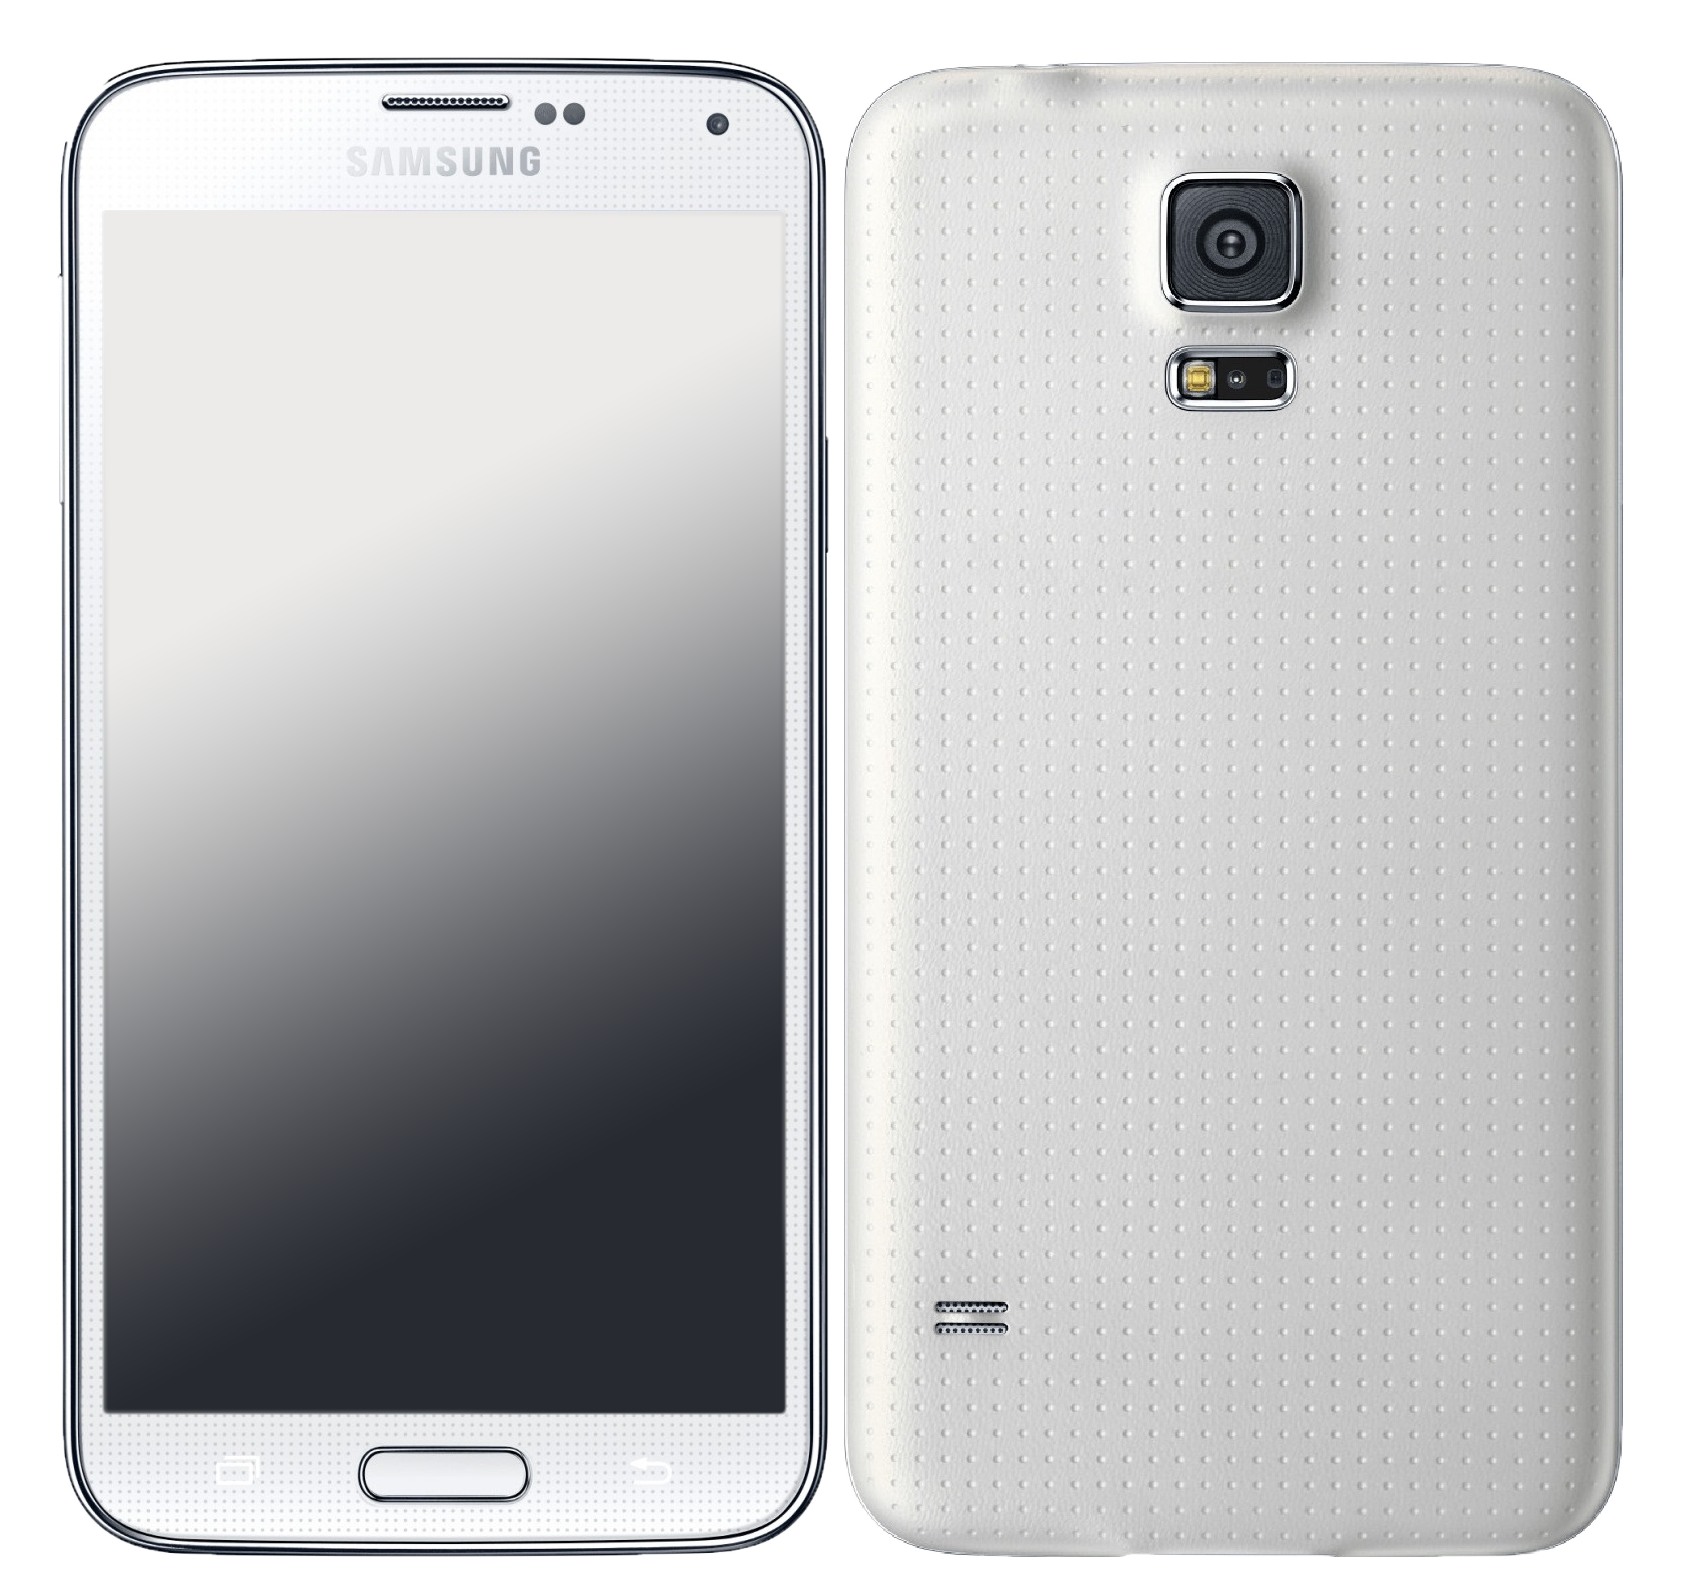 Samsung Galaxy S5 G901F weiß - Ohne Vertrag